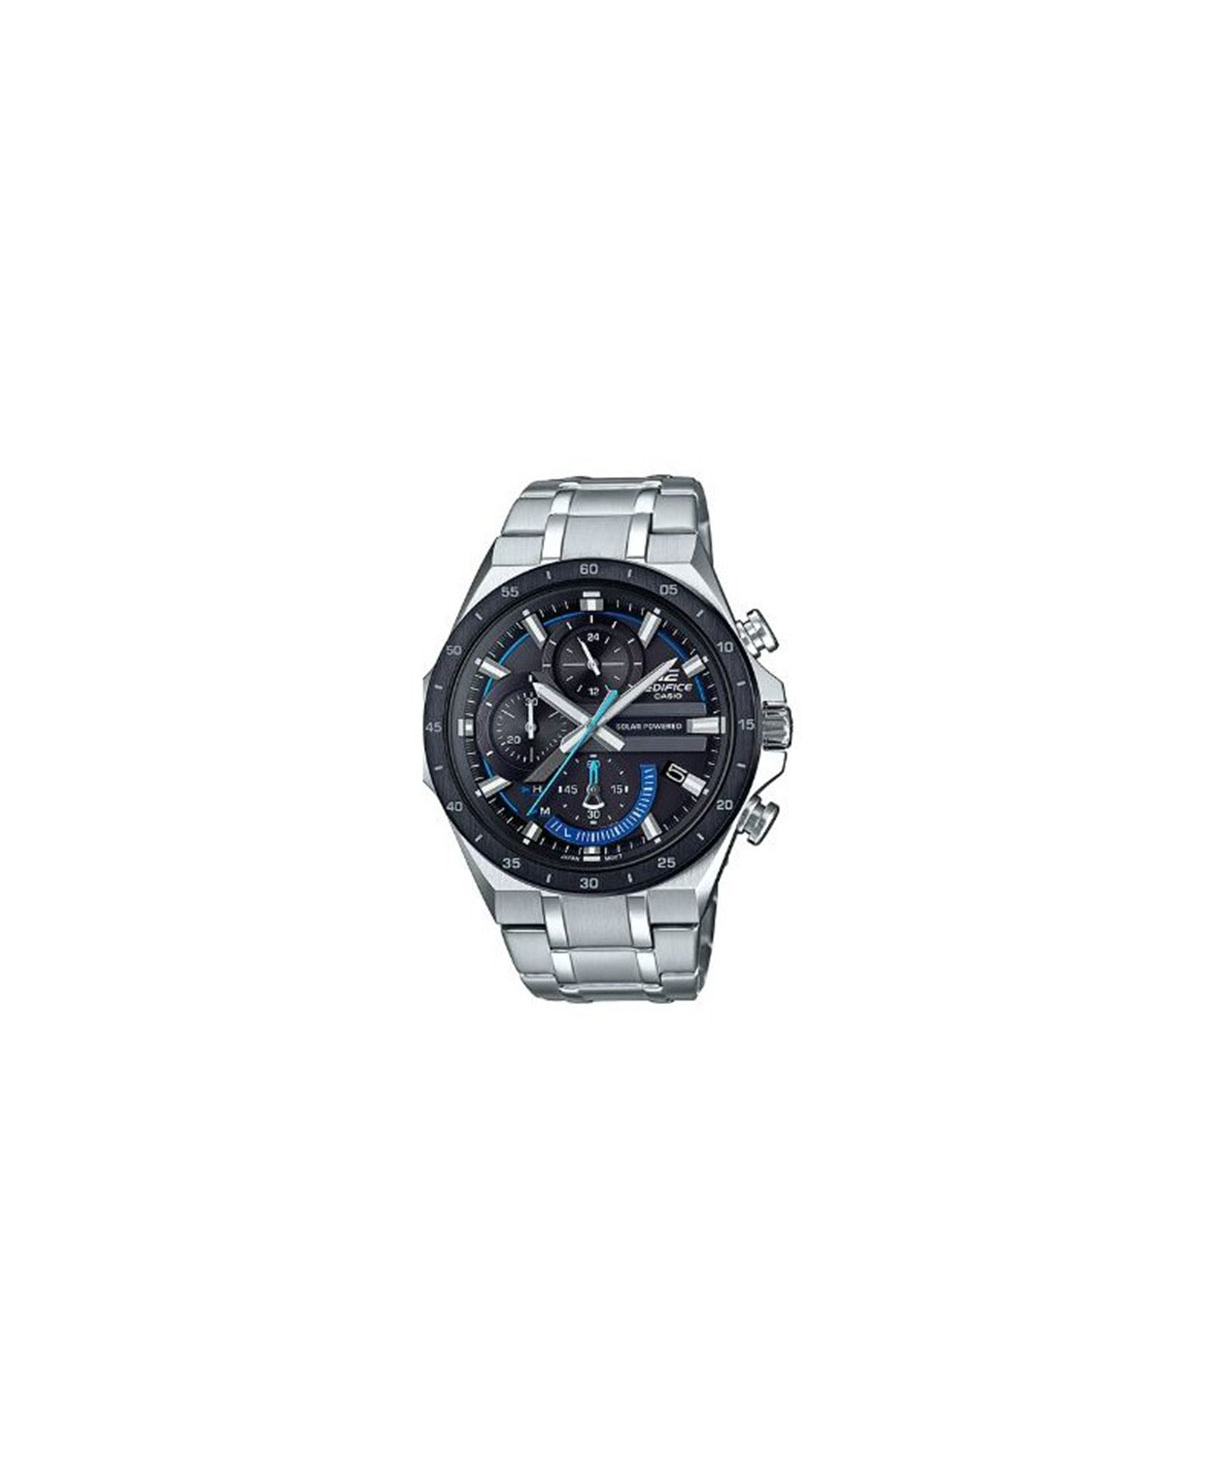 Ժամացույց  «Casio» ձեռքի   EQS-920DB-1BVUDF